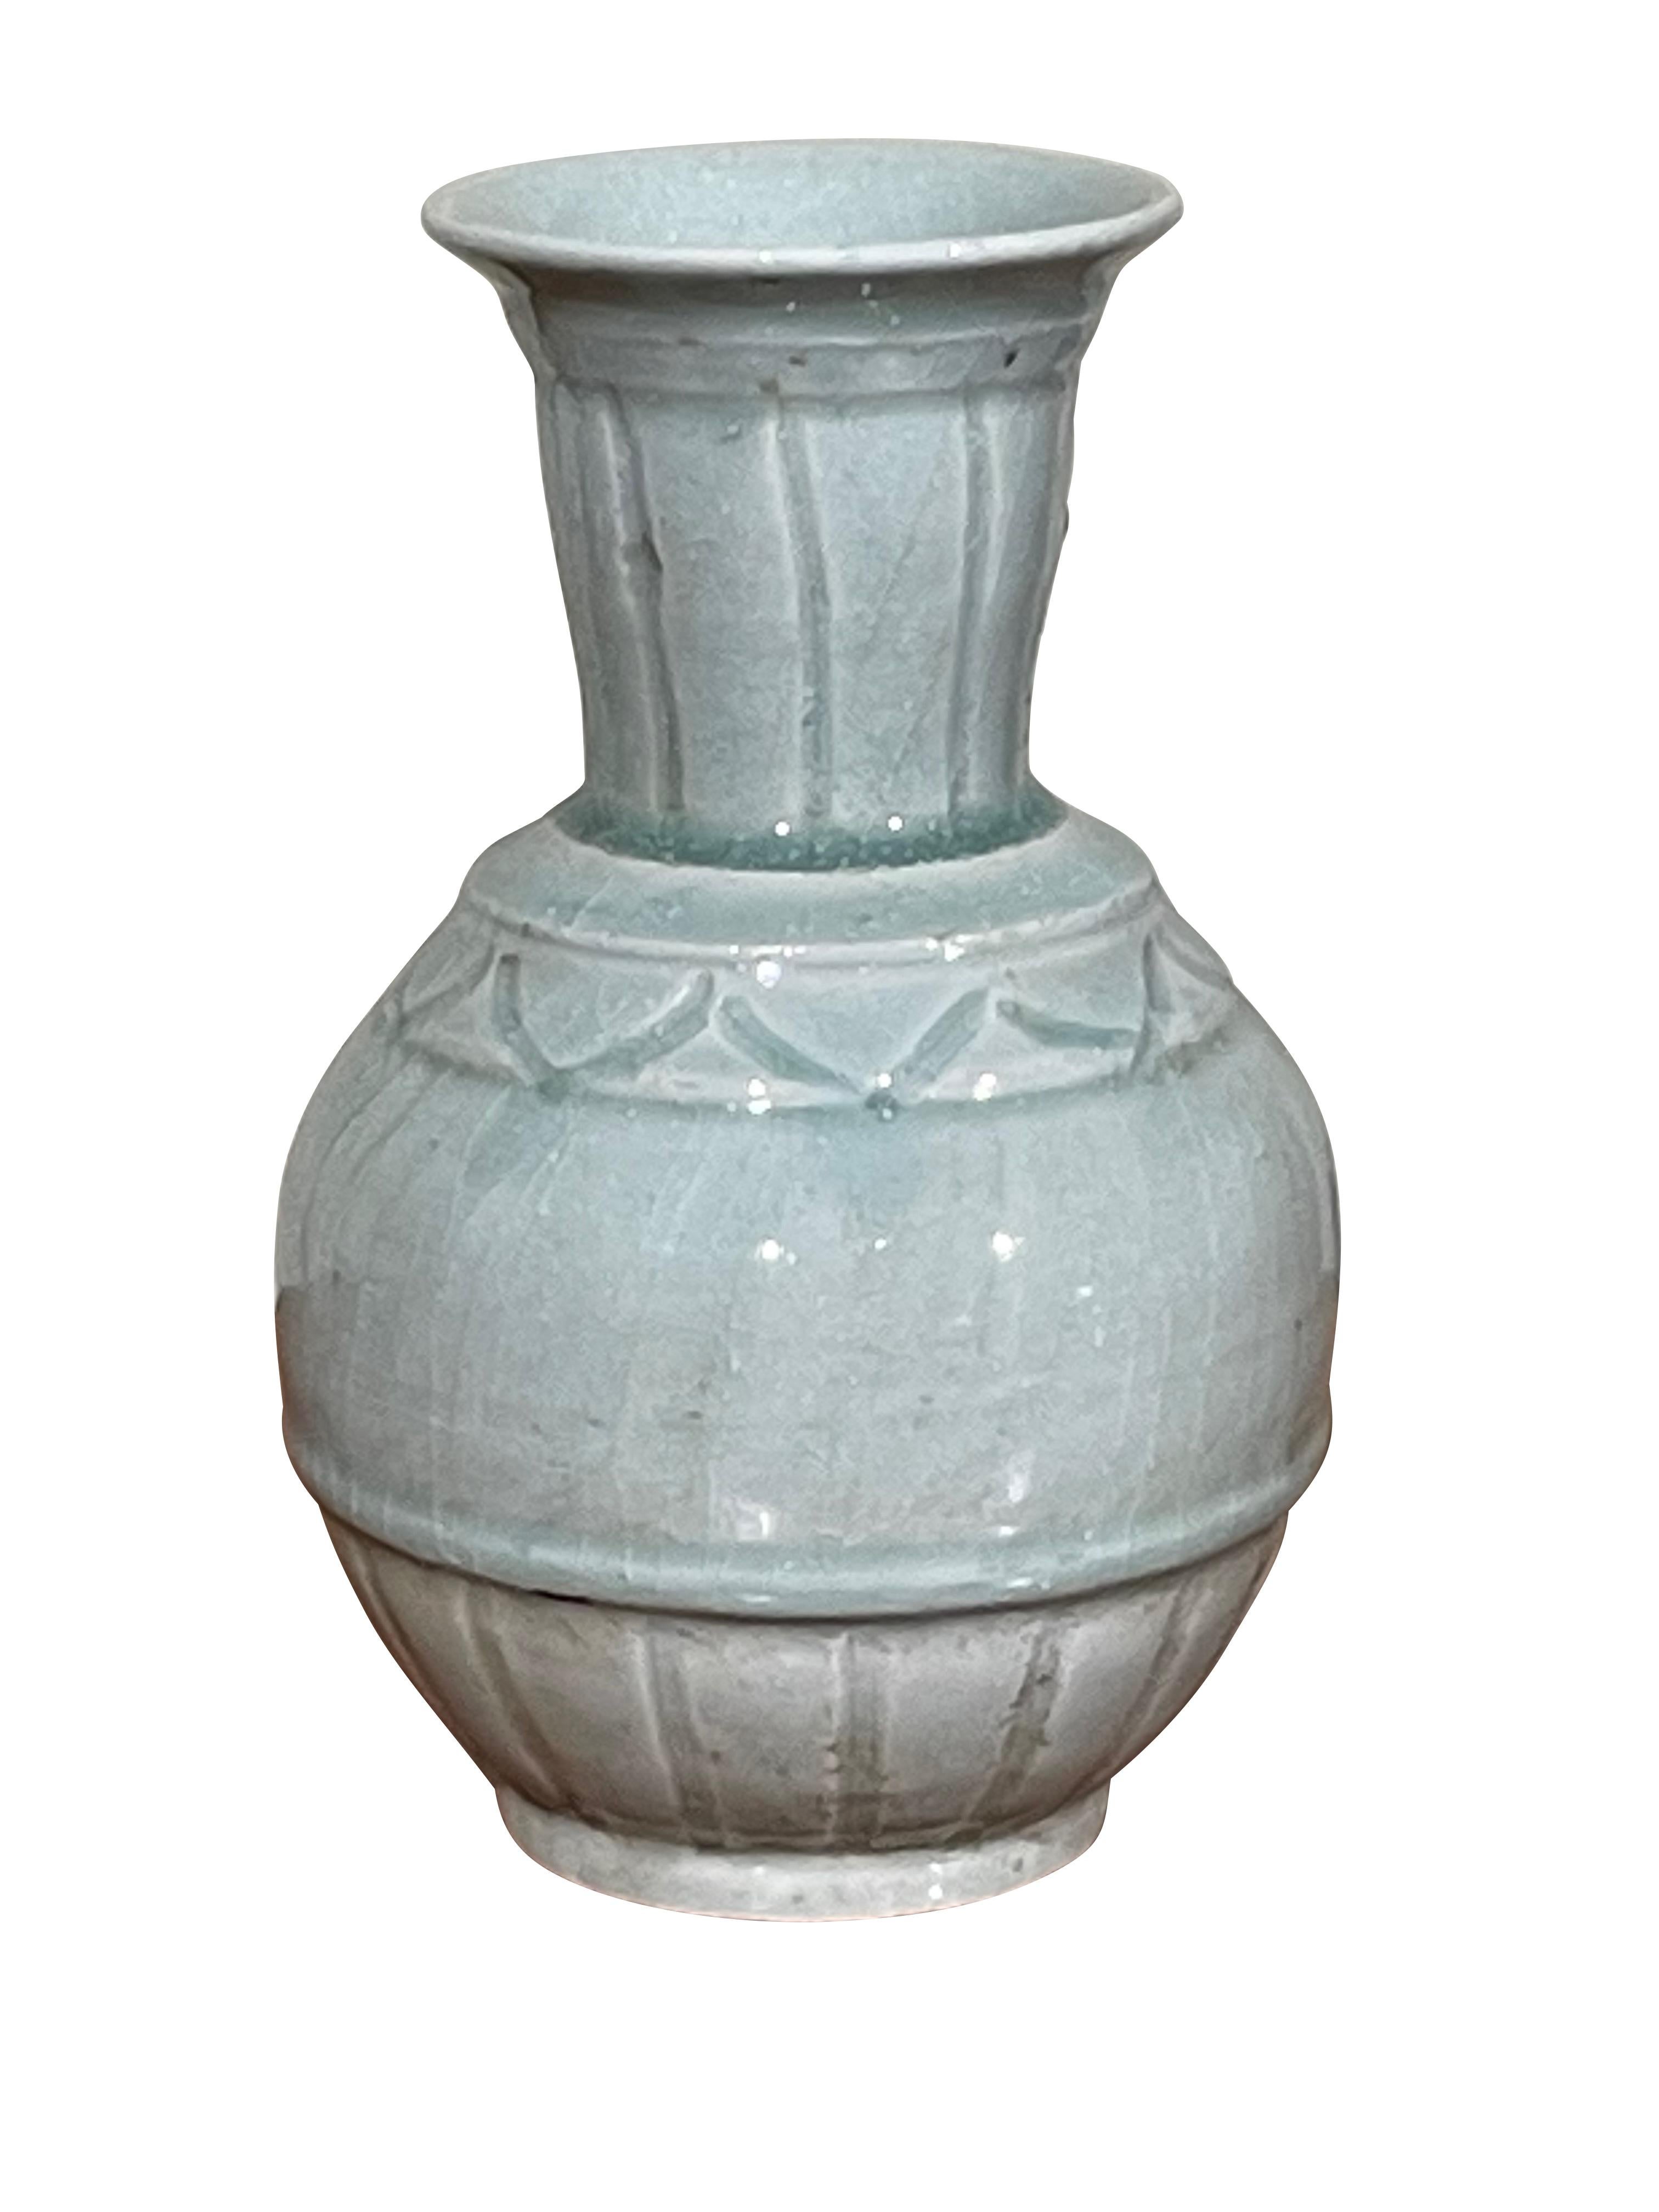 Vase contemporain chinois de couleur turquoise pâle.
Design/One.
Issue d'une collection de trois pièces vendues à l'unité.
ARRIVÉE AVRIL